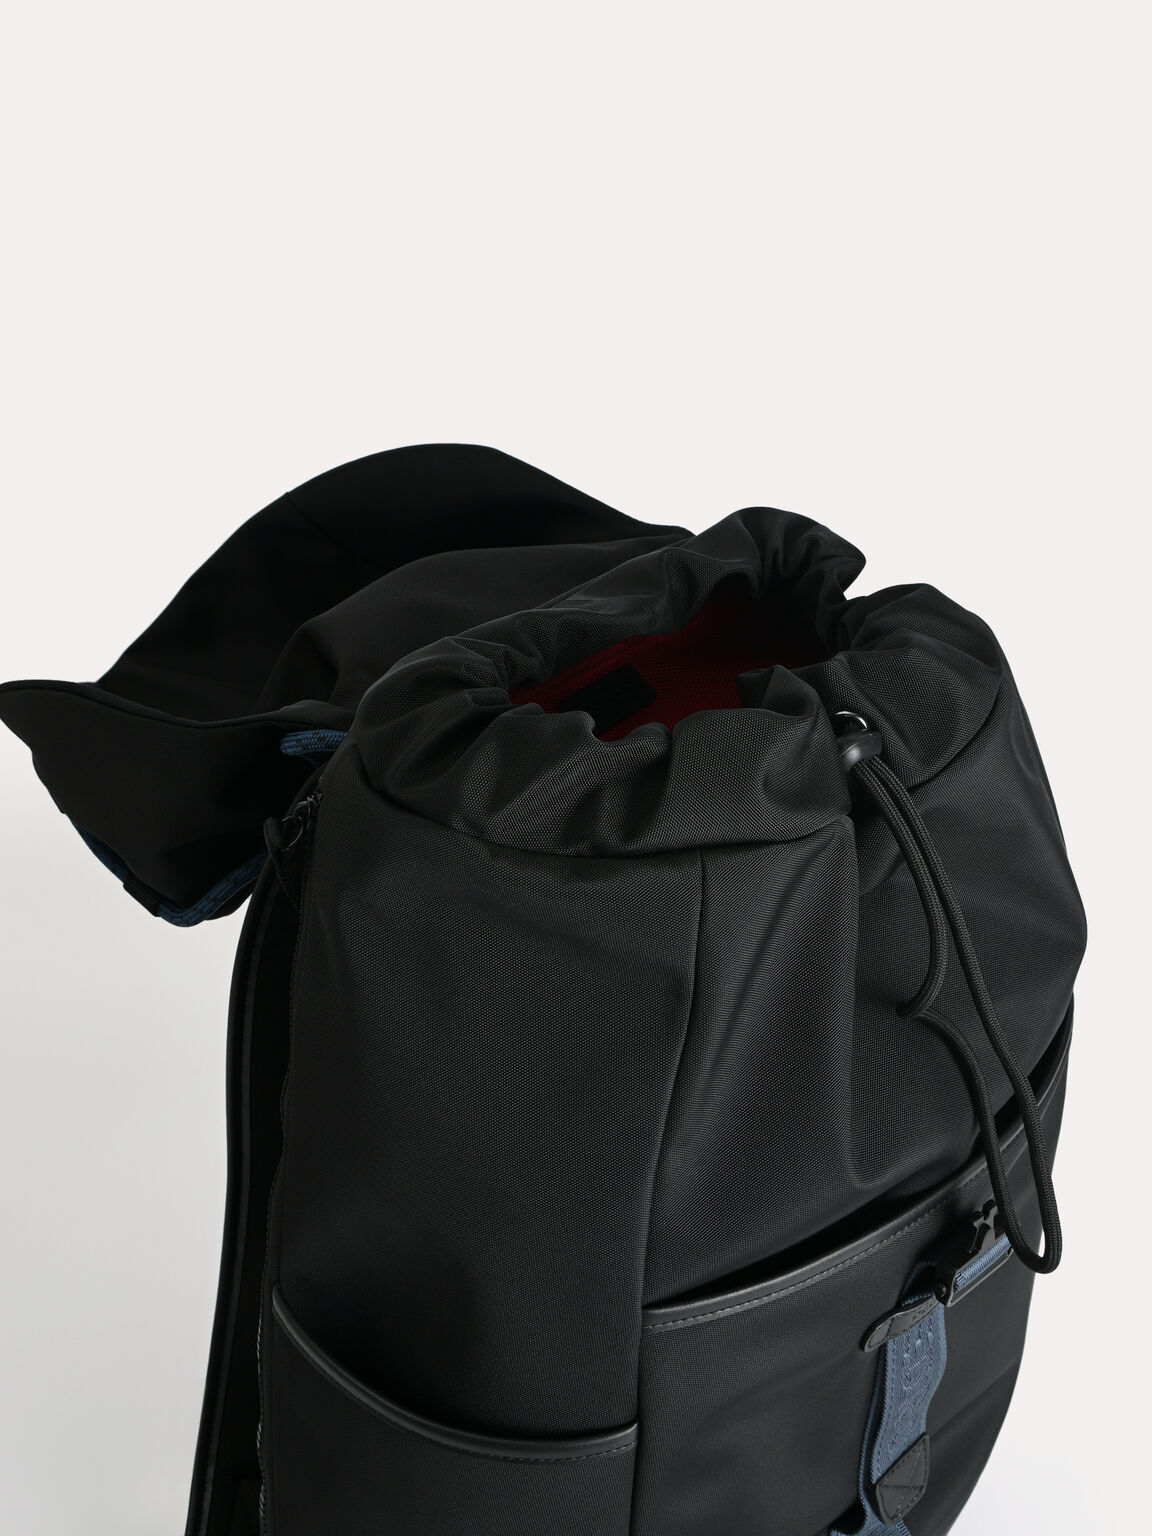 Utilitarian Drawstring Backpack, Black, hi-res